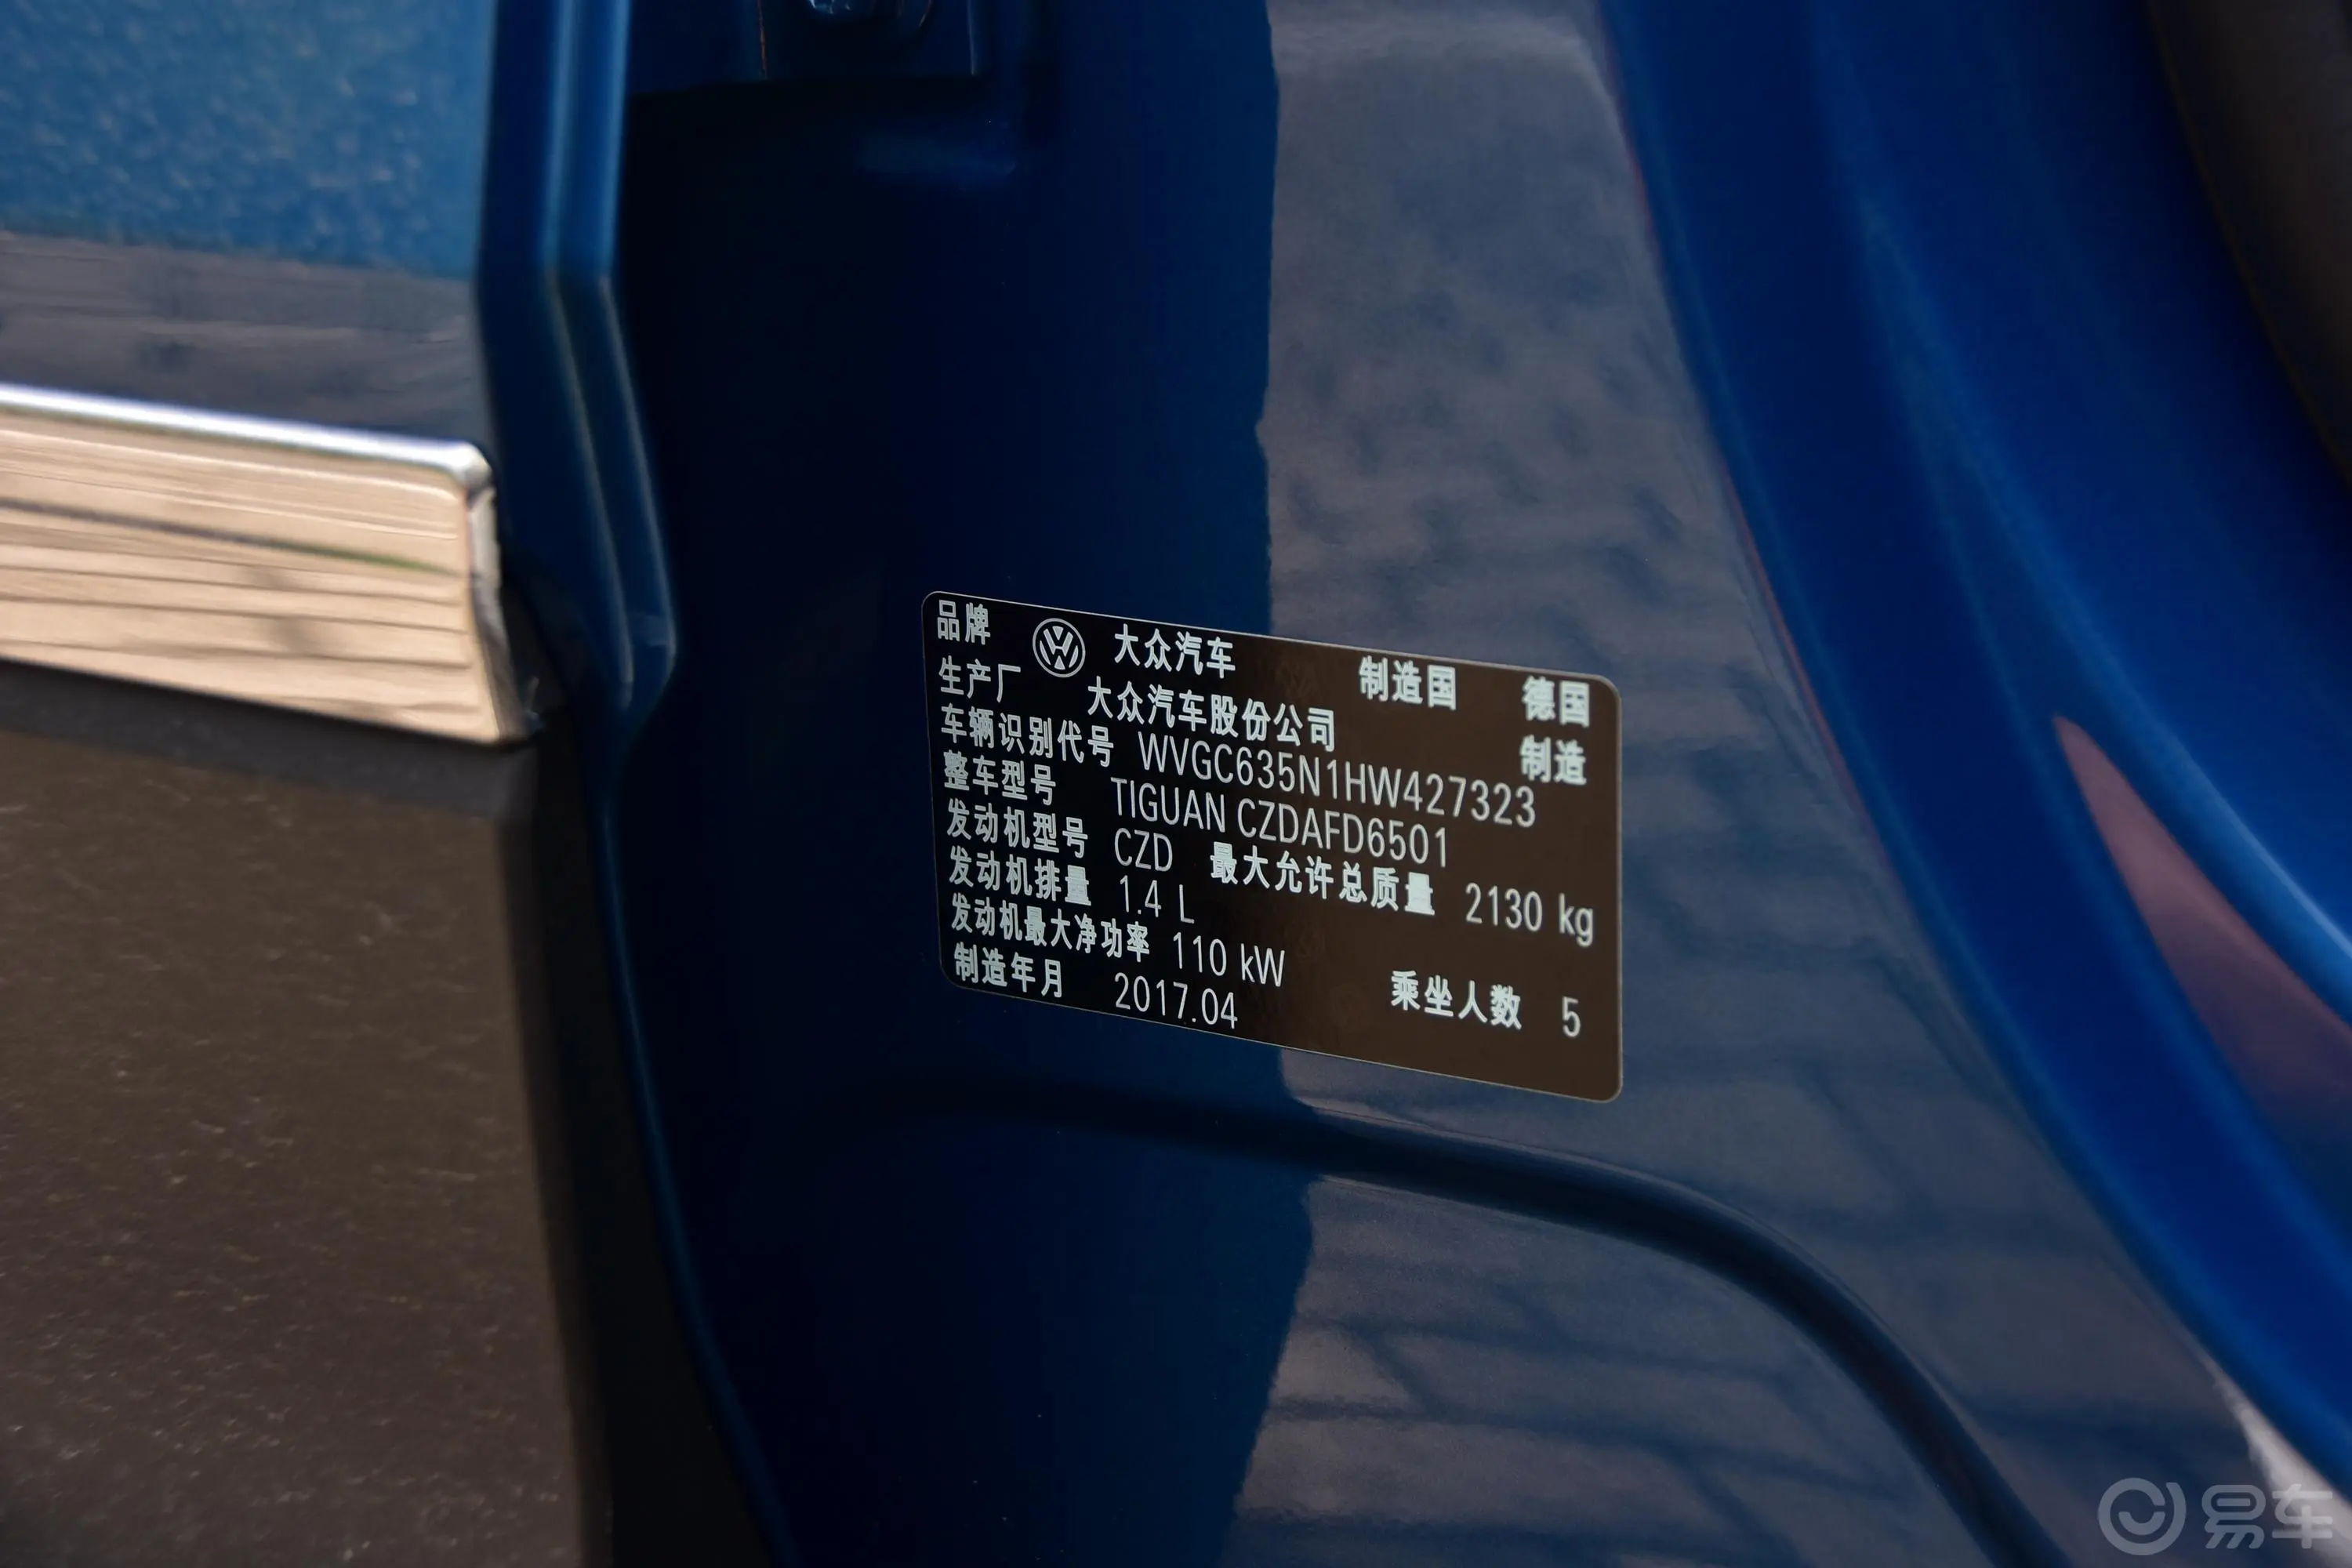 Tiguan280TSI 两驱 精英版车辆信息铭牌